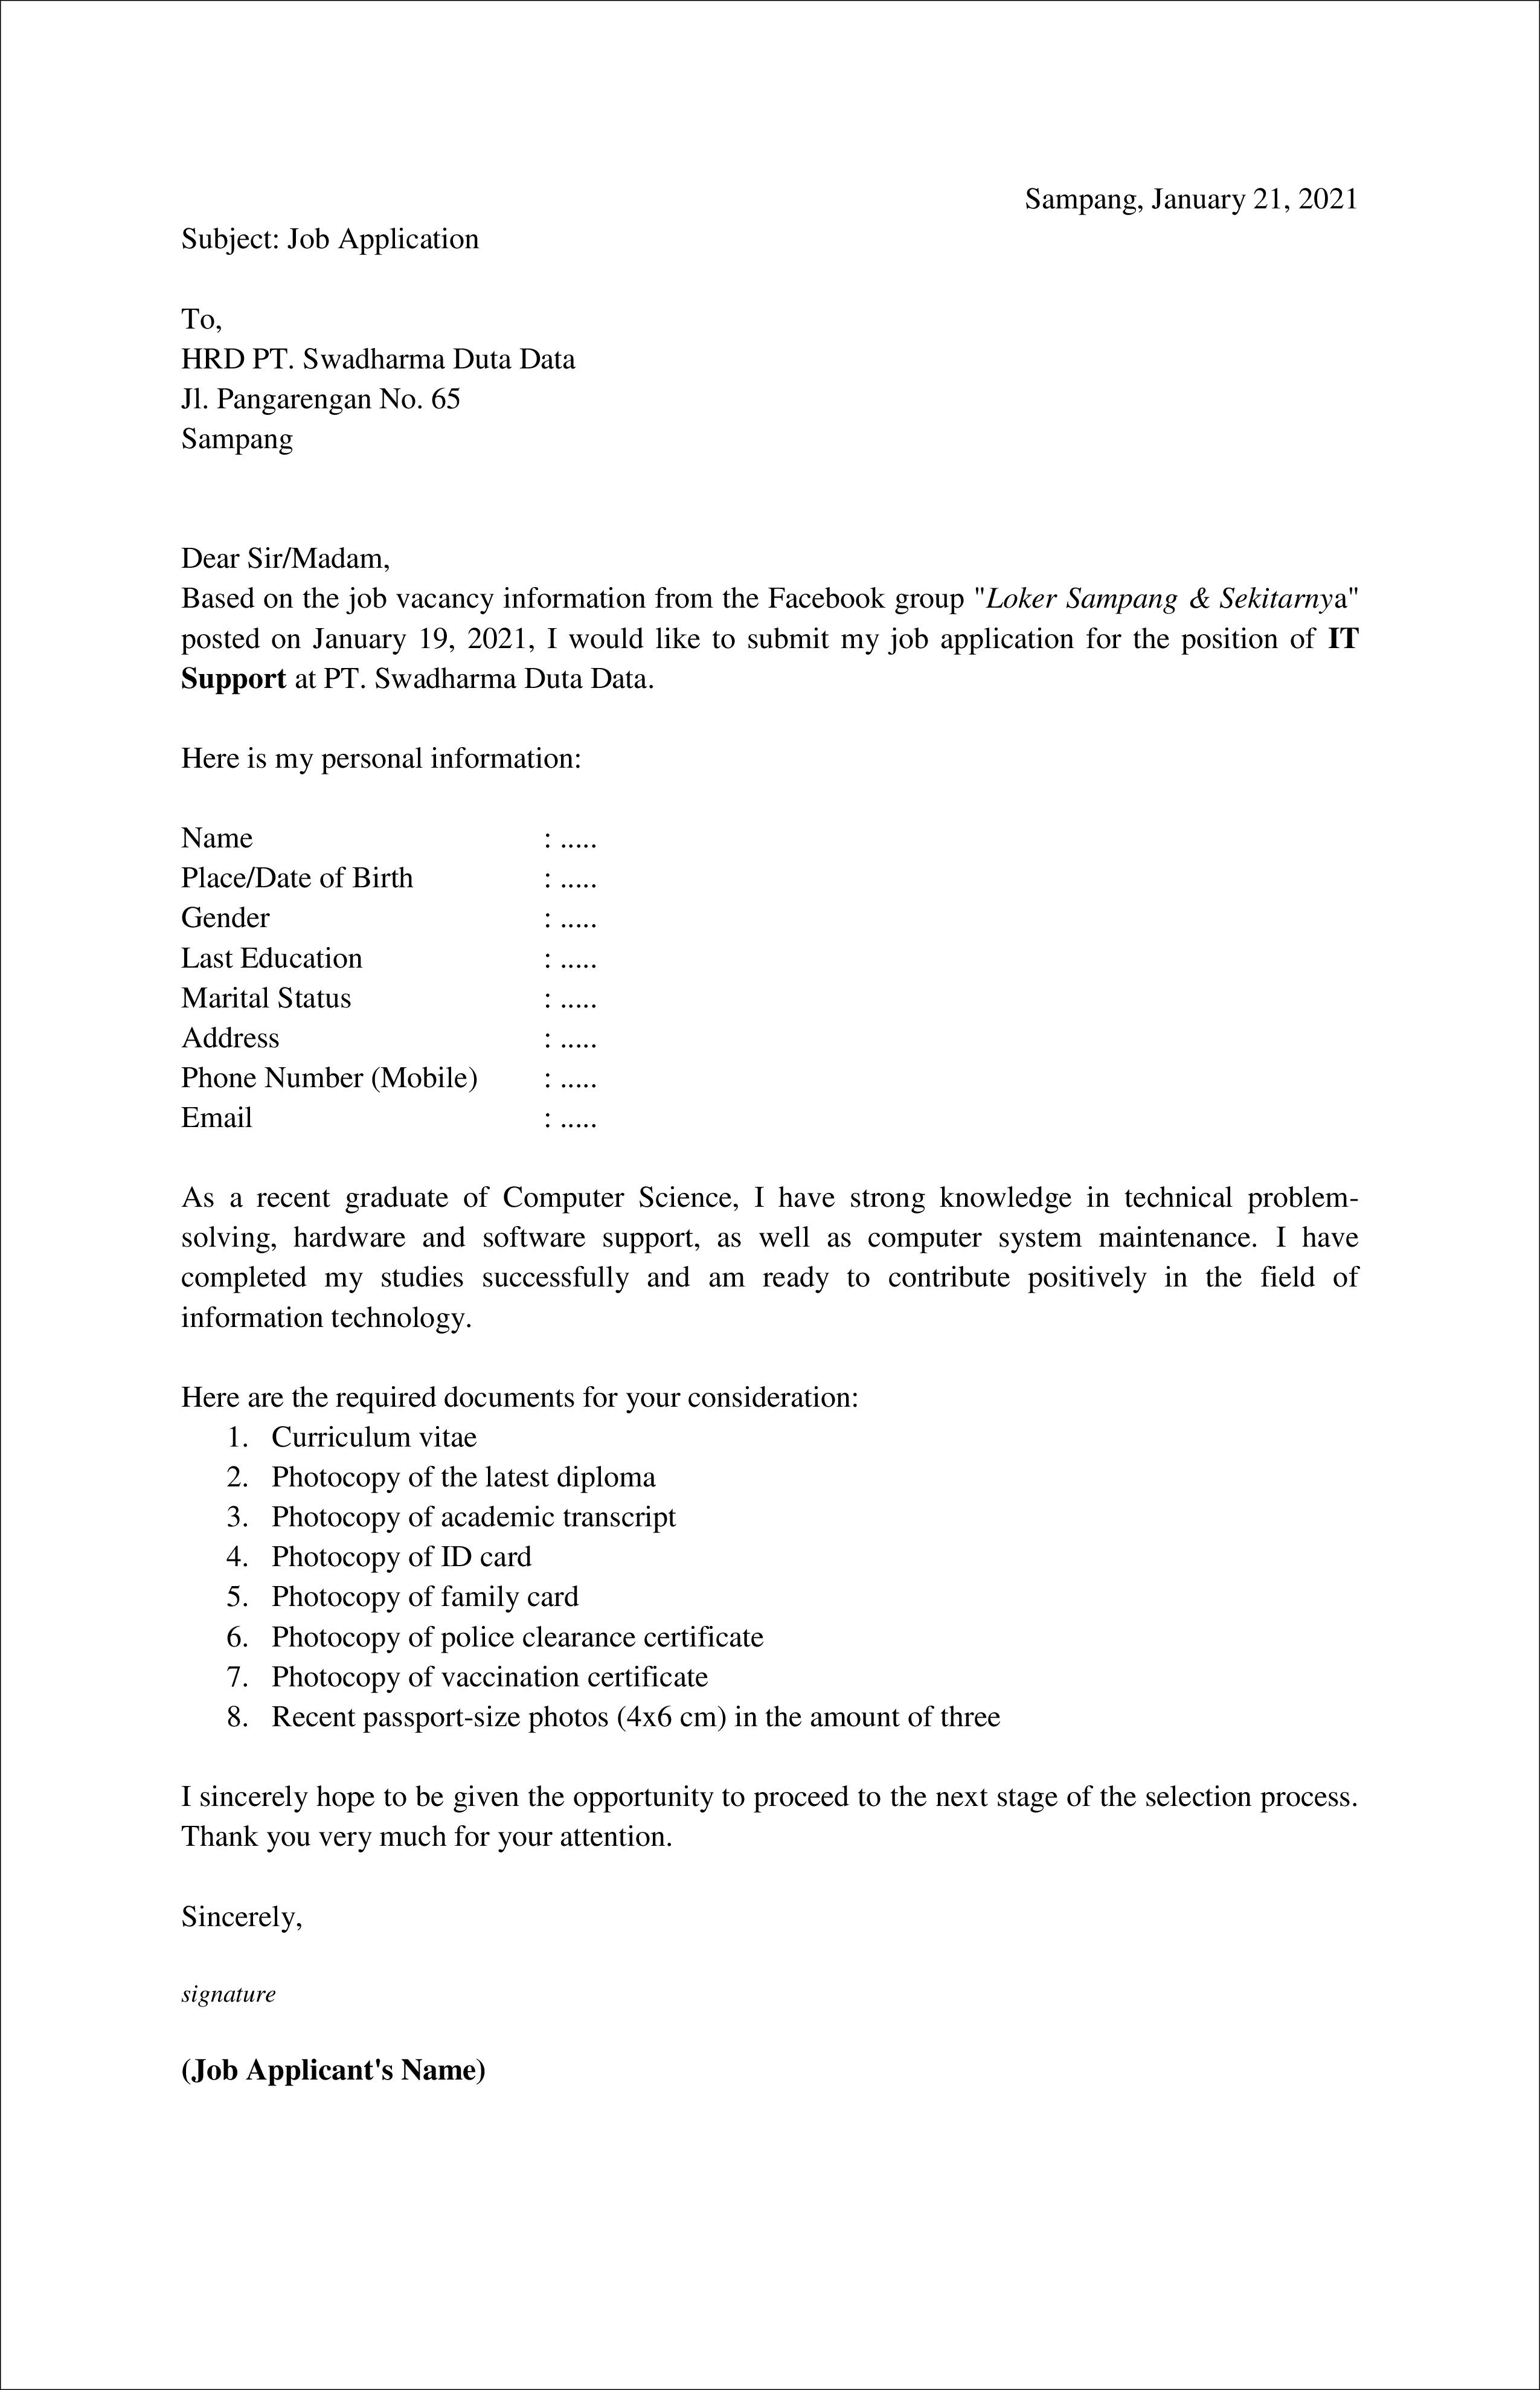 Contoh Application Letter IT Support Fresh Graduate (Bahasa Inggris) Berdasarkan Informasi Dari Media Sosial